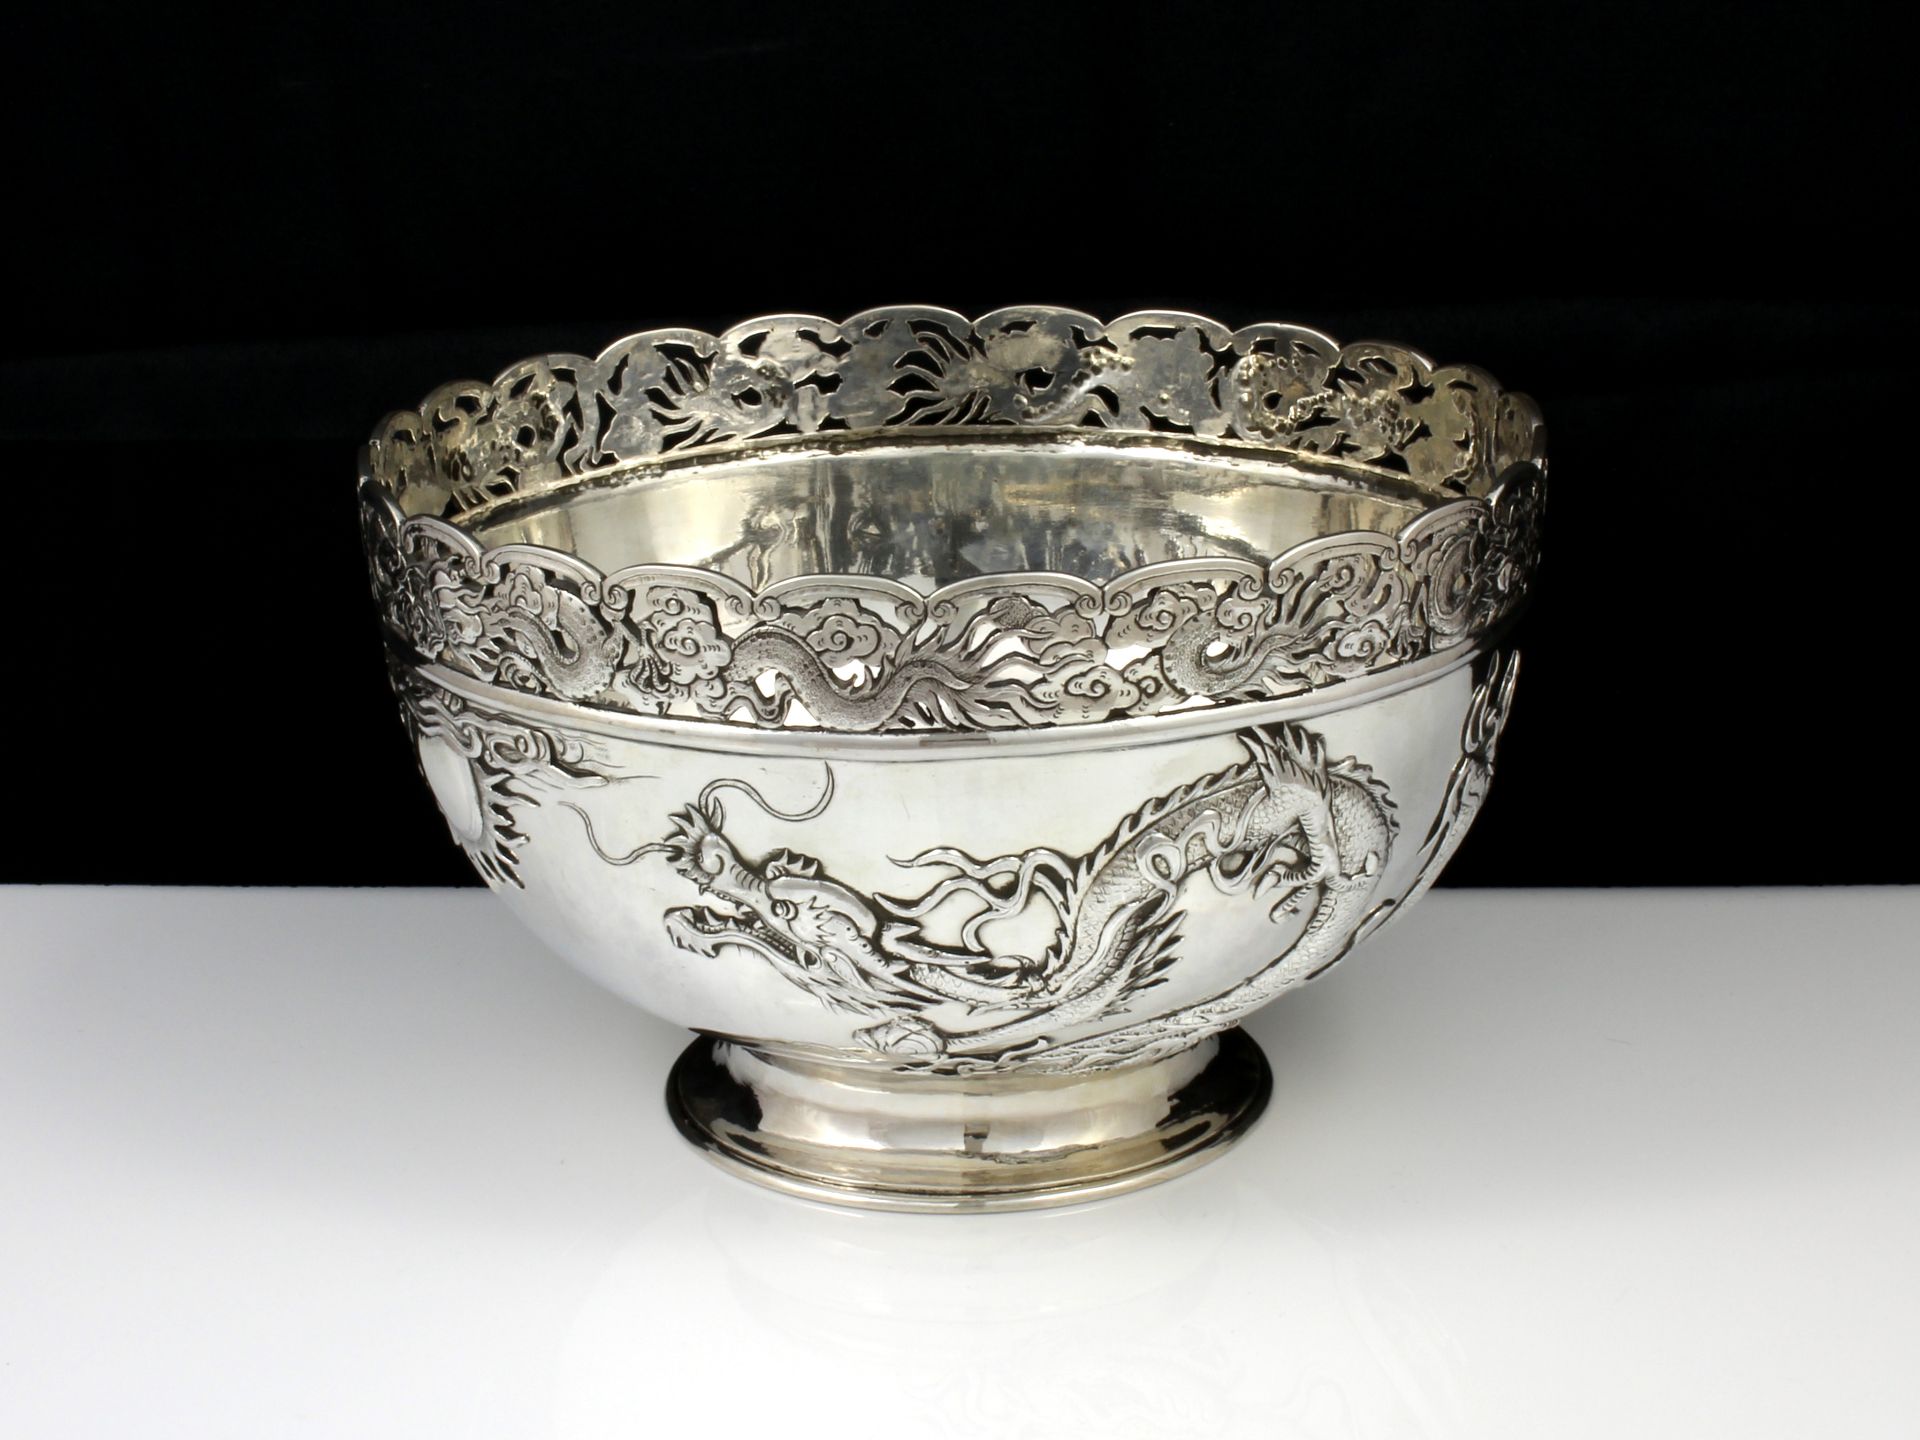 An antique Qing dynasty Chinese export Silver dragon bowl by Wang Hing & Co of Hong Kong circa 1890.